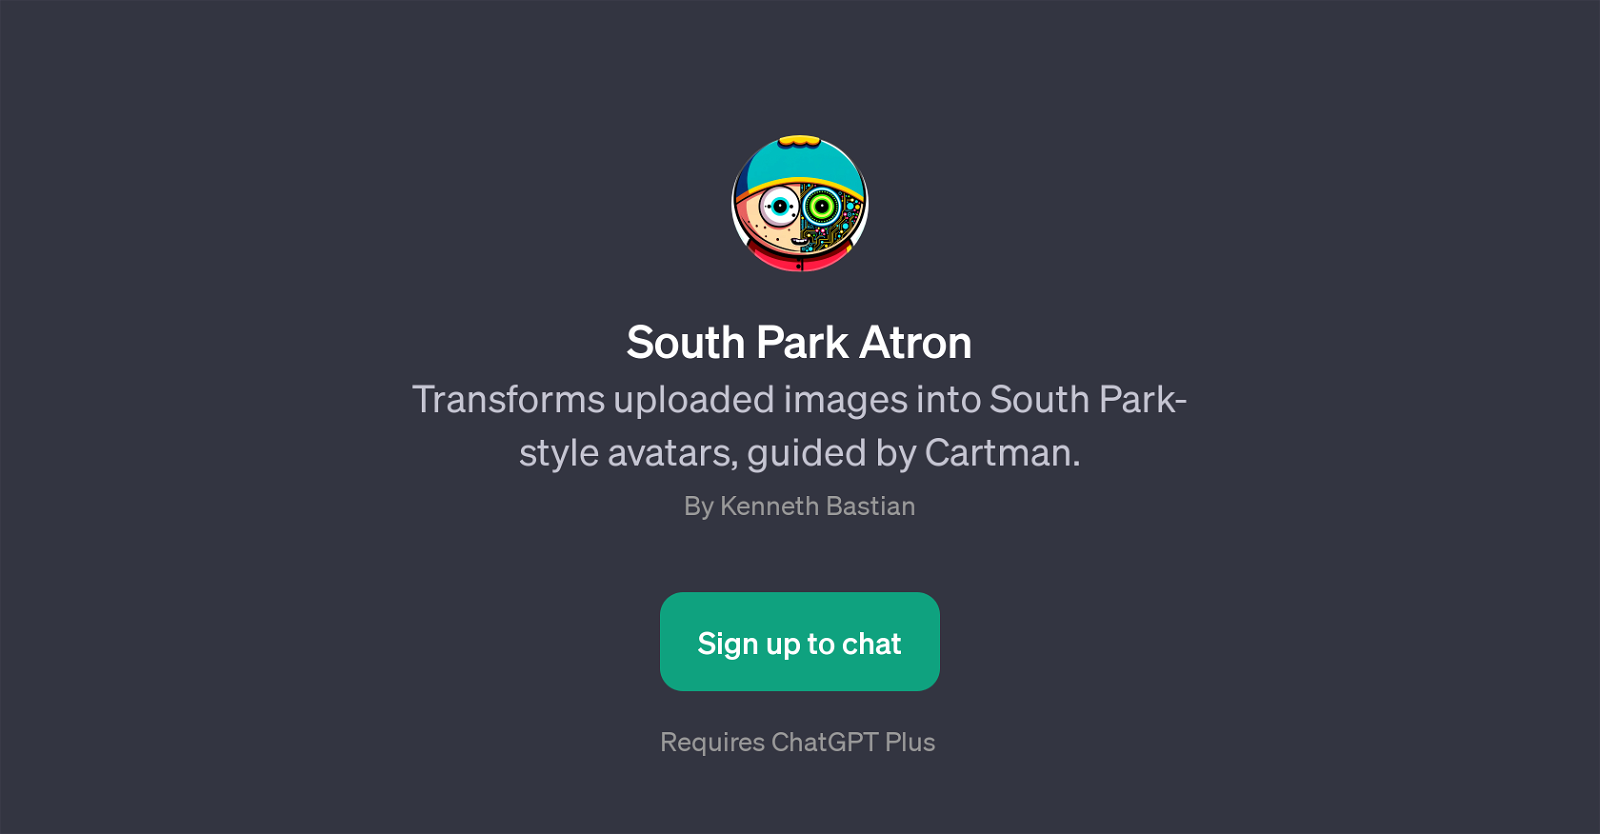 South Park Atron website